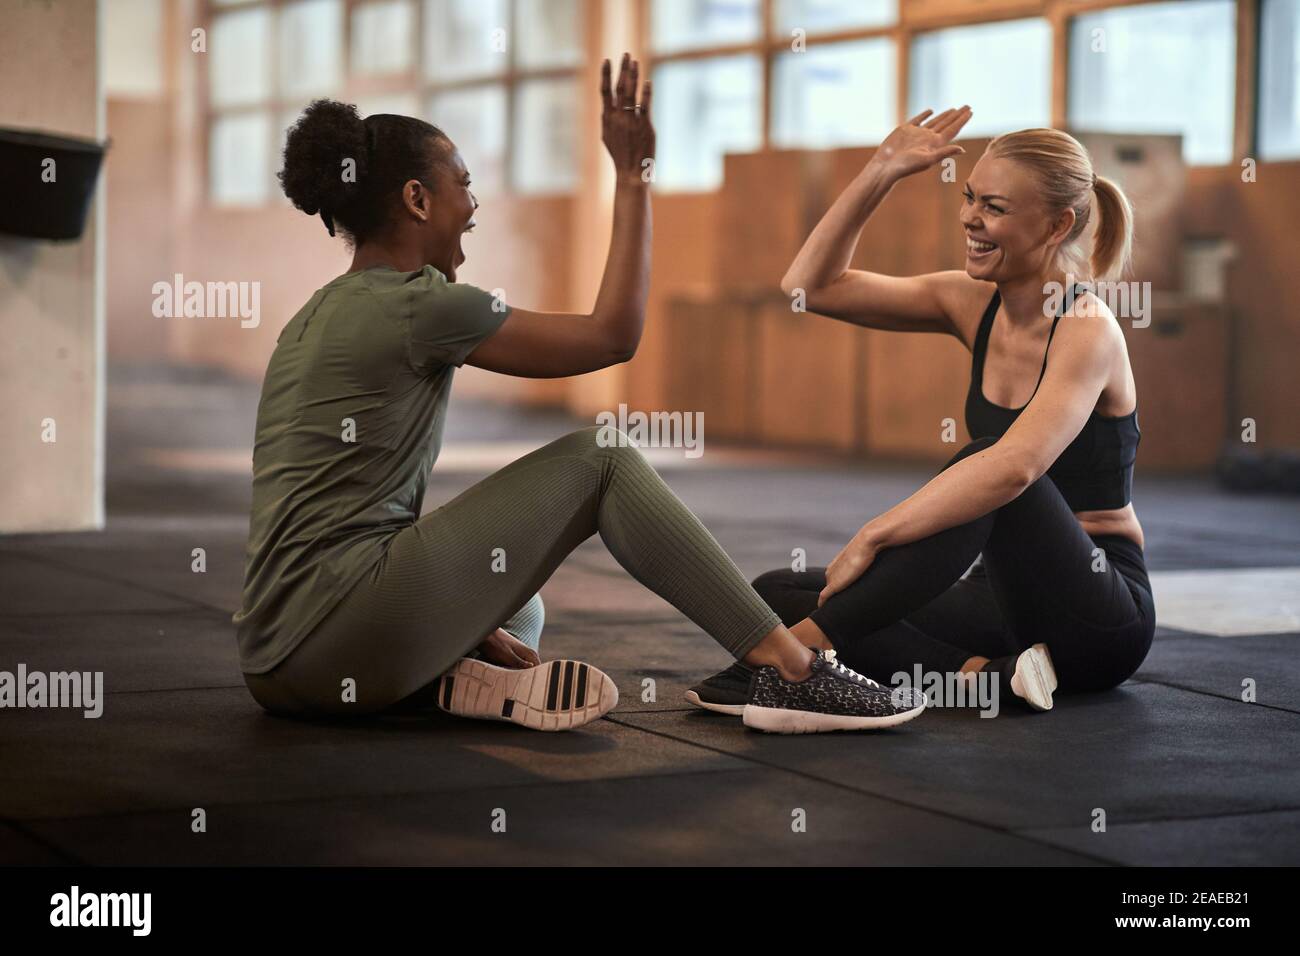 Zwei junge Frauen, die beim Sitzen lachen und sich hochkneifen Nach dem Training auf der Fitnessetage Stockfoto